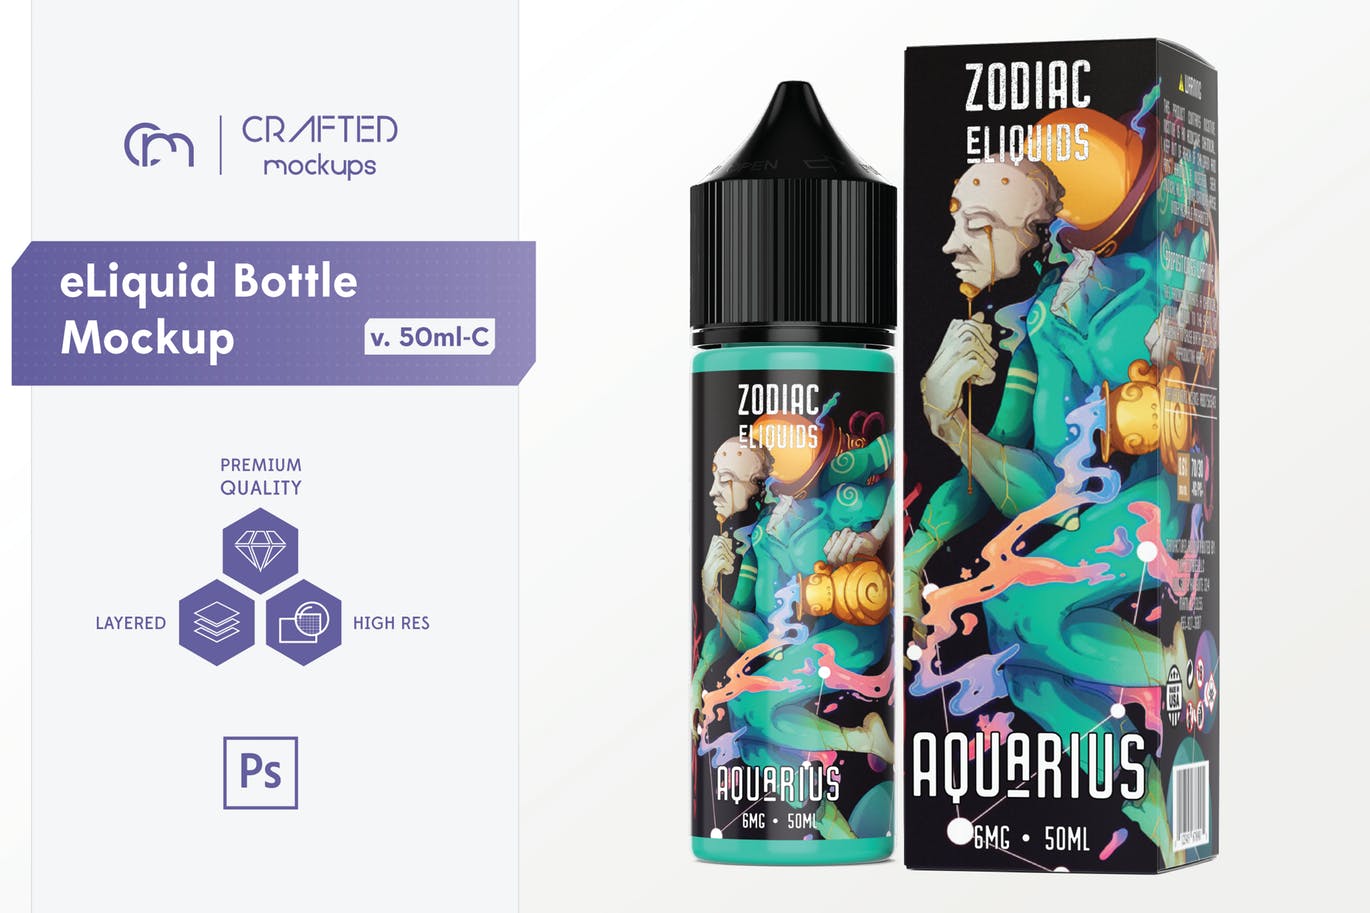 电子烟油瓶&包装盒外观设计样机模板[50ml规格] eLiquid Bottle Mockup v. 50ml-C插图